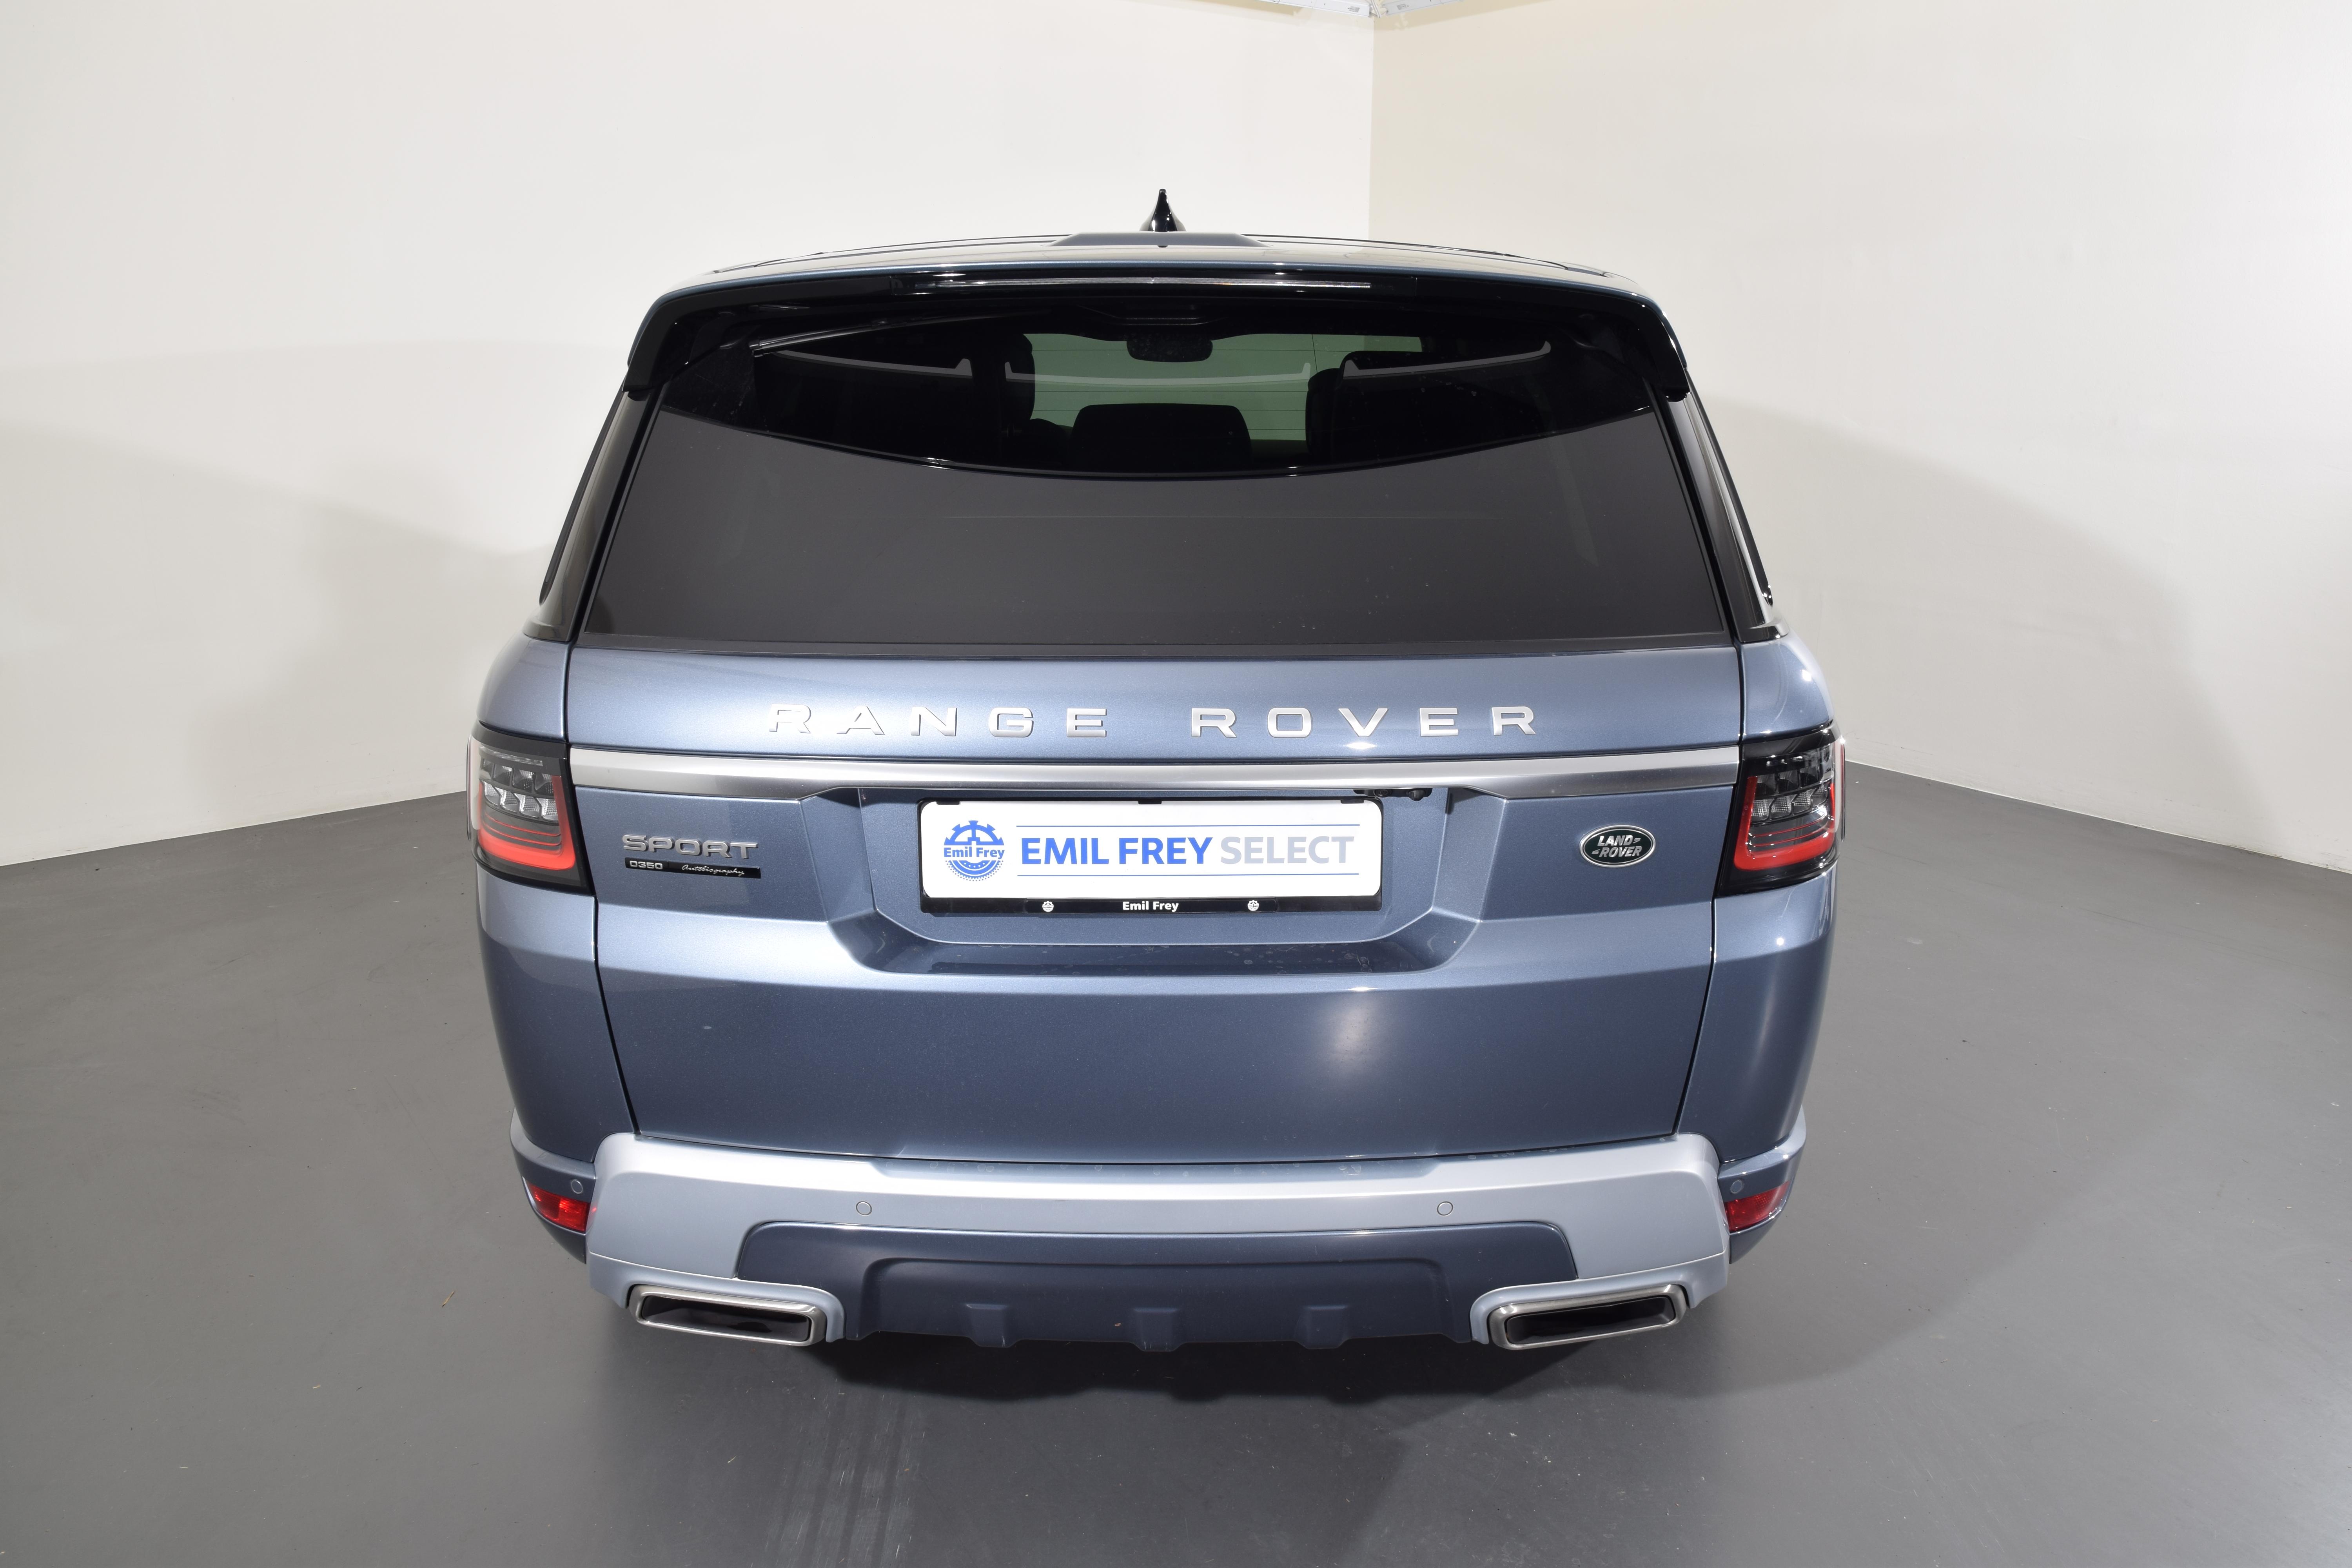 Land Rover Range Rover Sport, als Occasion oder Neuwagen kaufen oder leasen